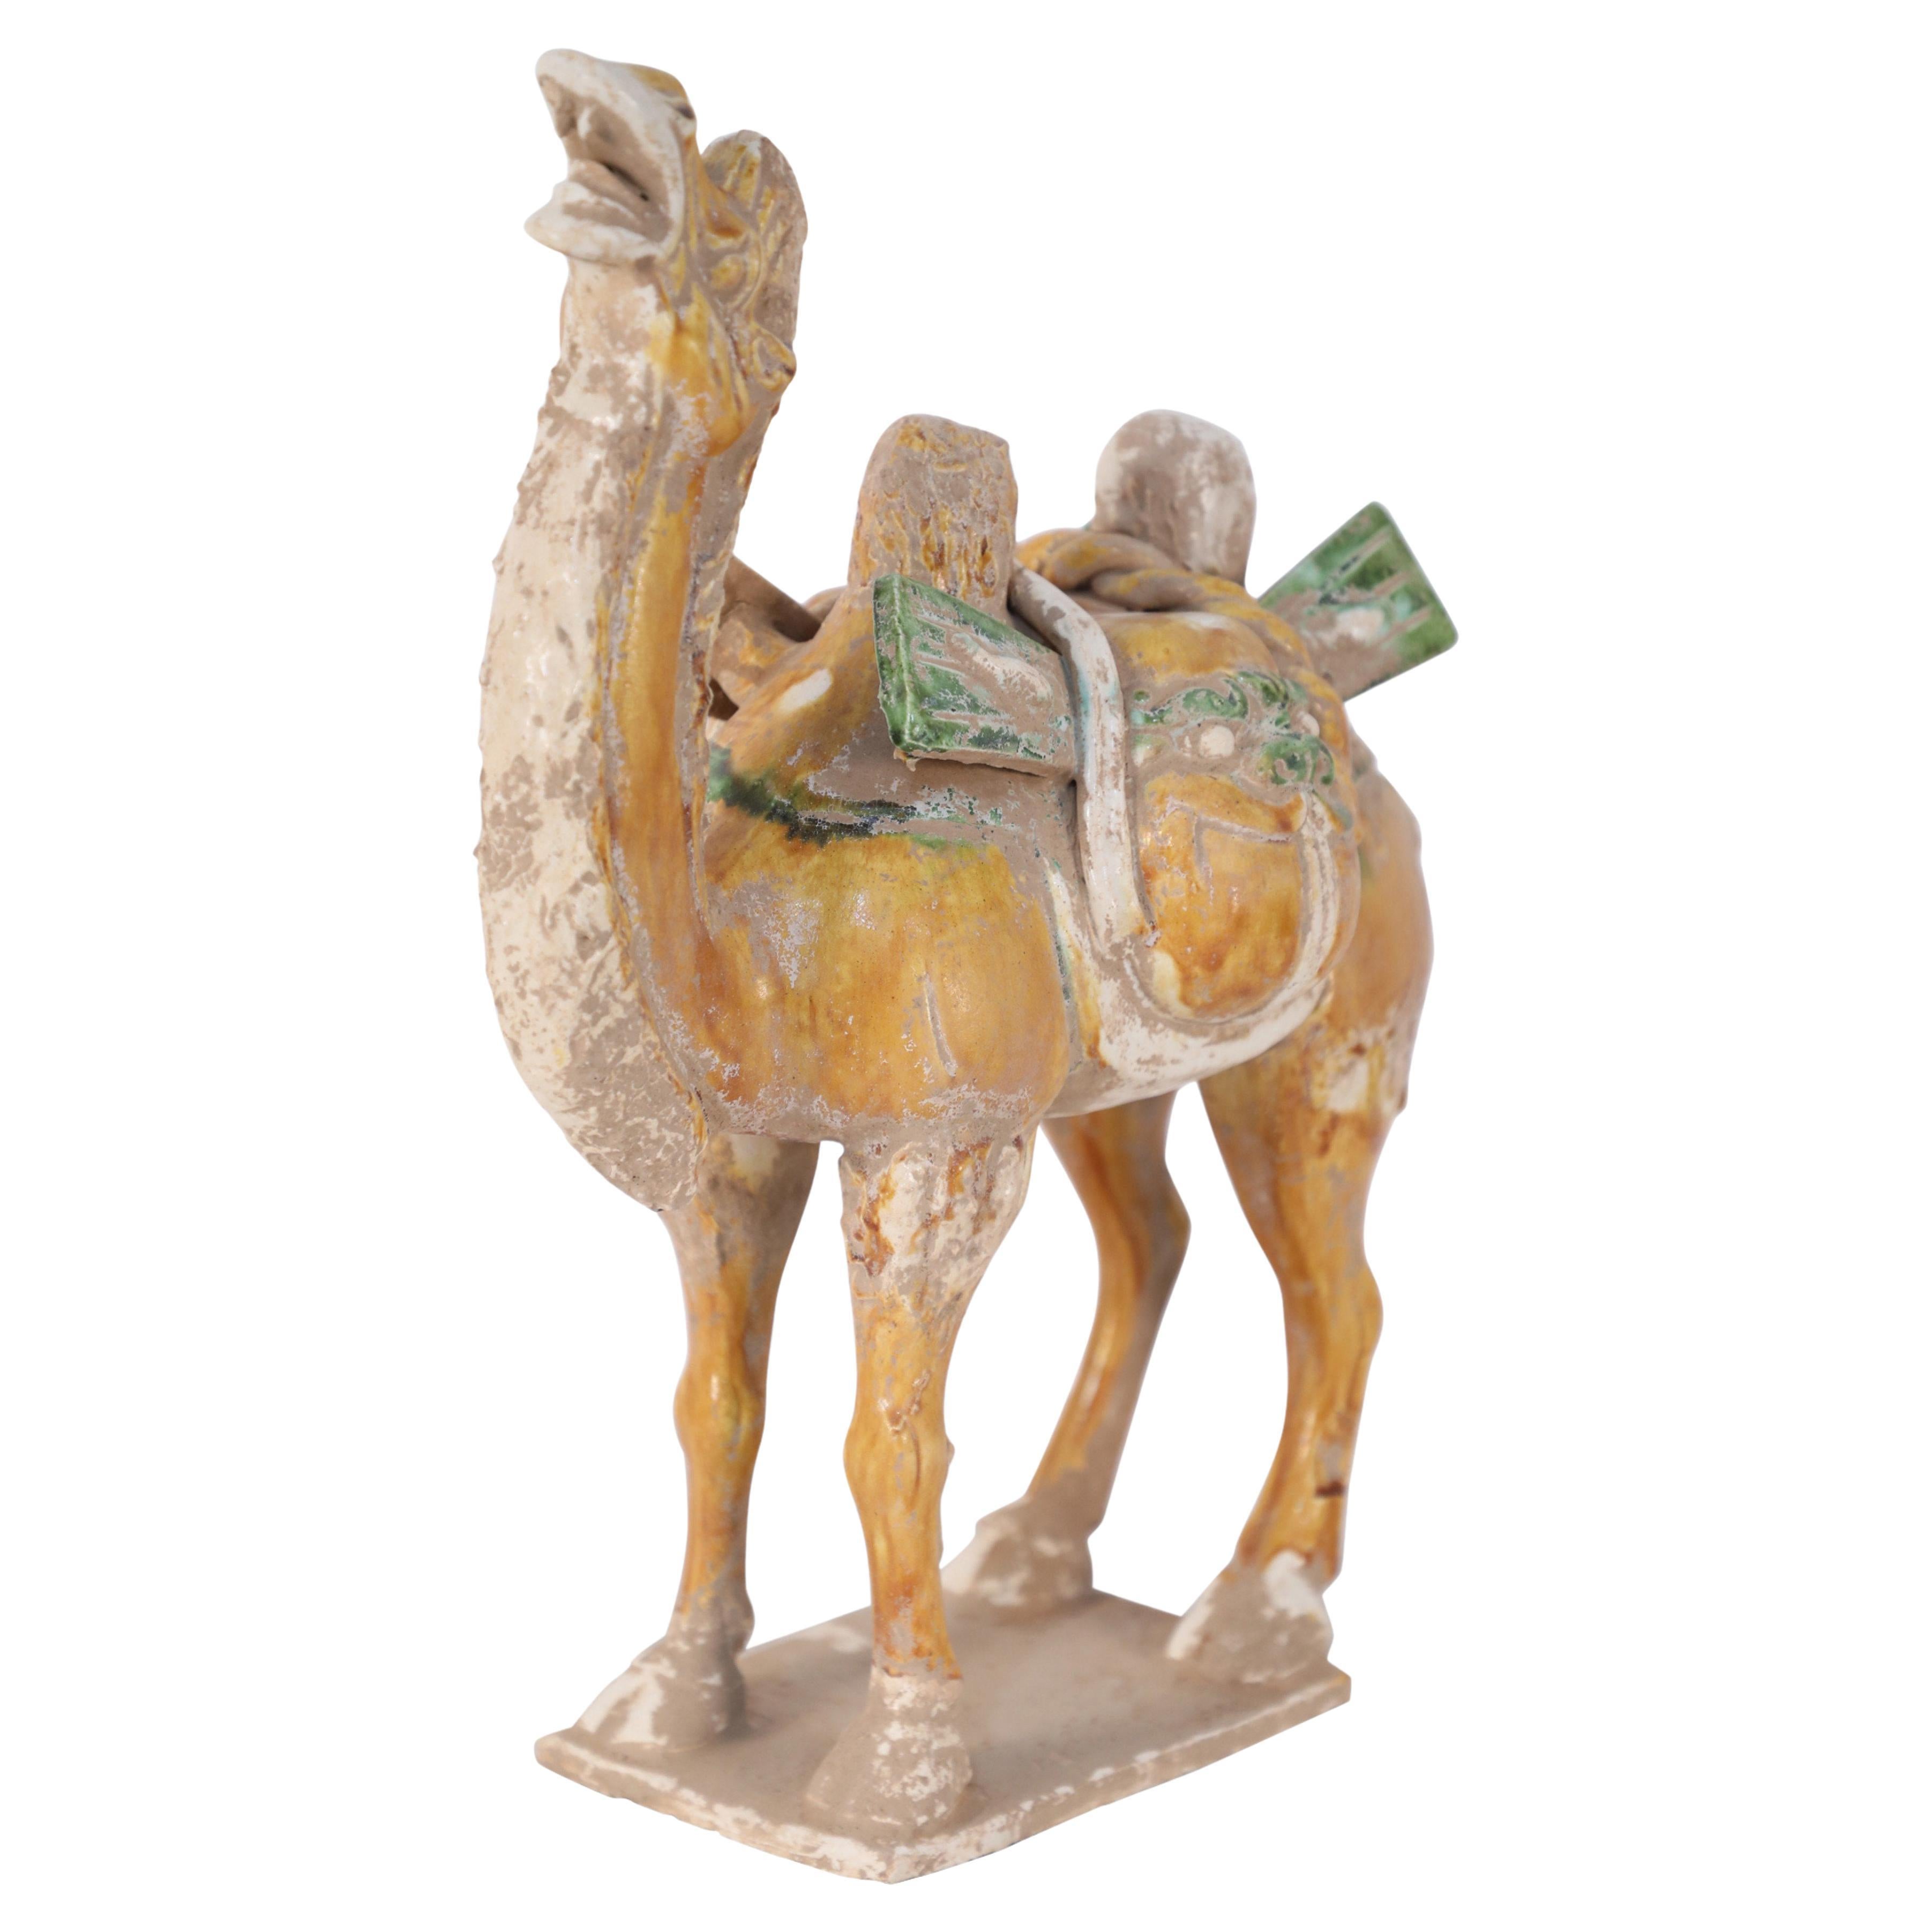 Chinesische Tombfigur aus glasierter Terrakotta-Kamelie im Stil der chinesischen Tang-Dynastie